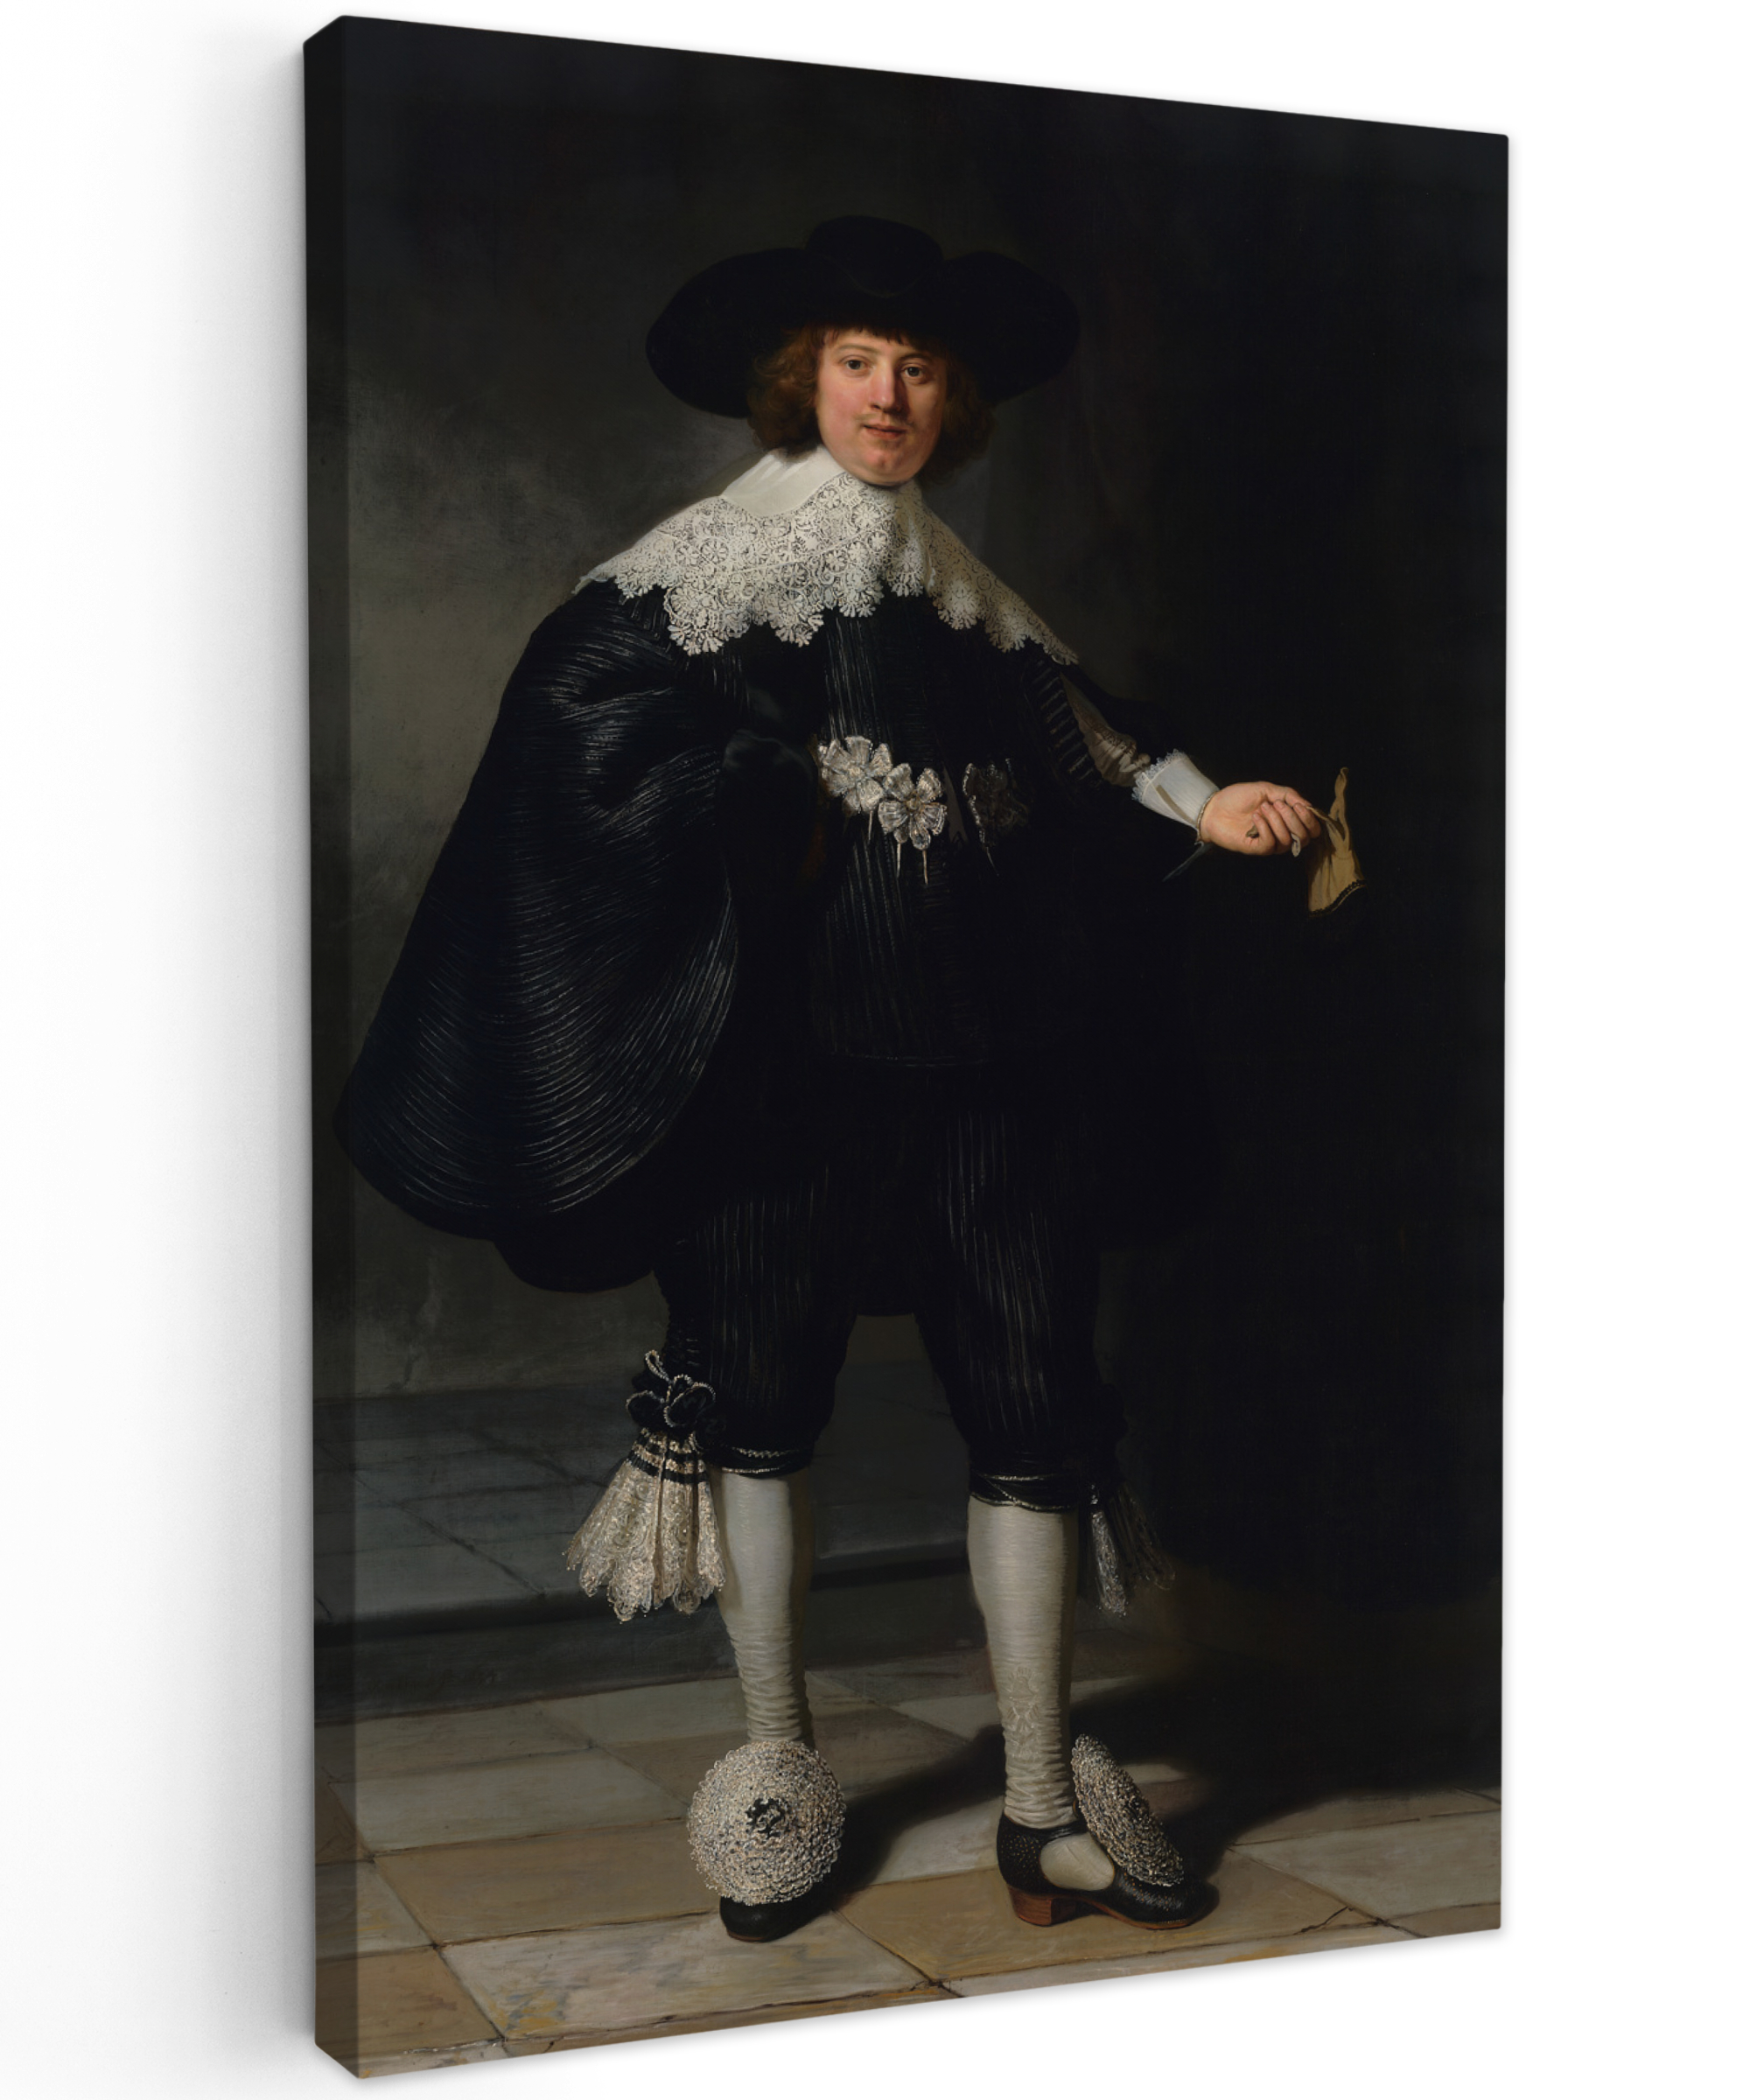 Leinwandbild - Das Hochzeitsbildnis von Marten Soolmans - Rembrandt van Rijn